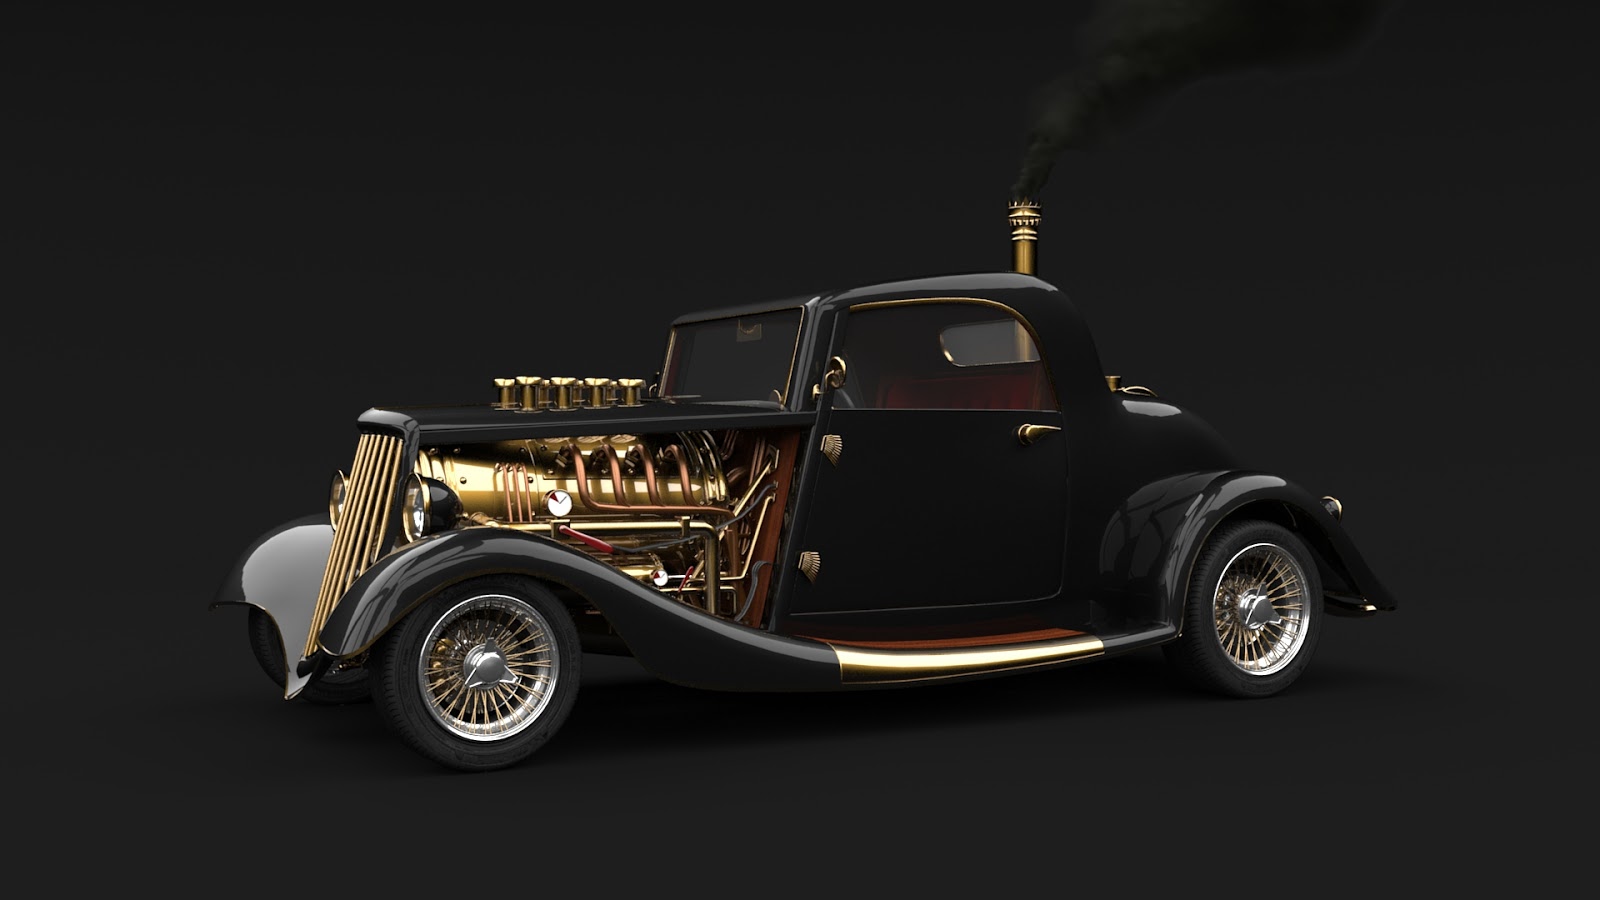 gold, smoke, steampunk, black, sci fi, black car, custom car, engine